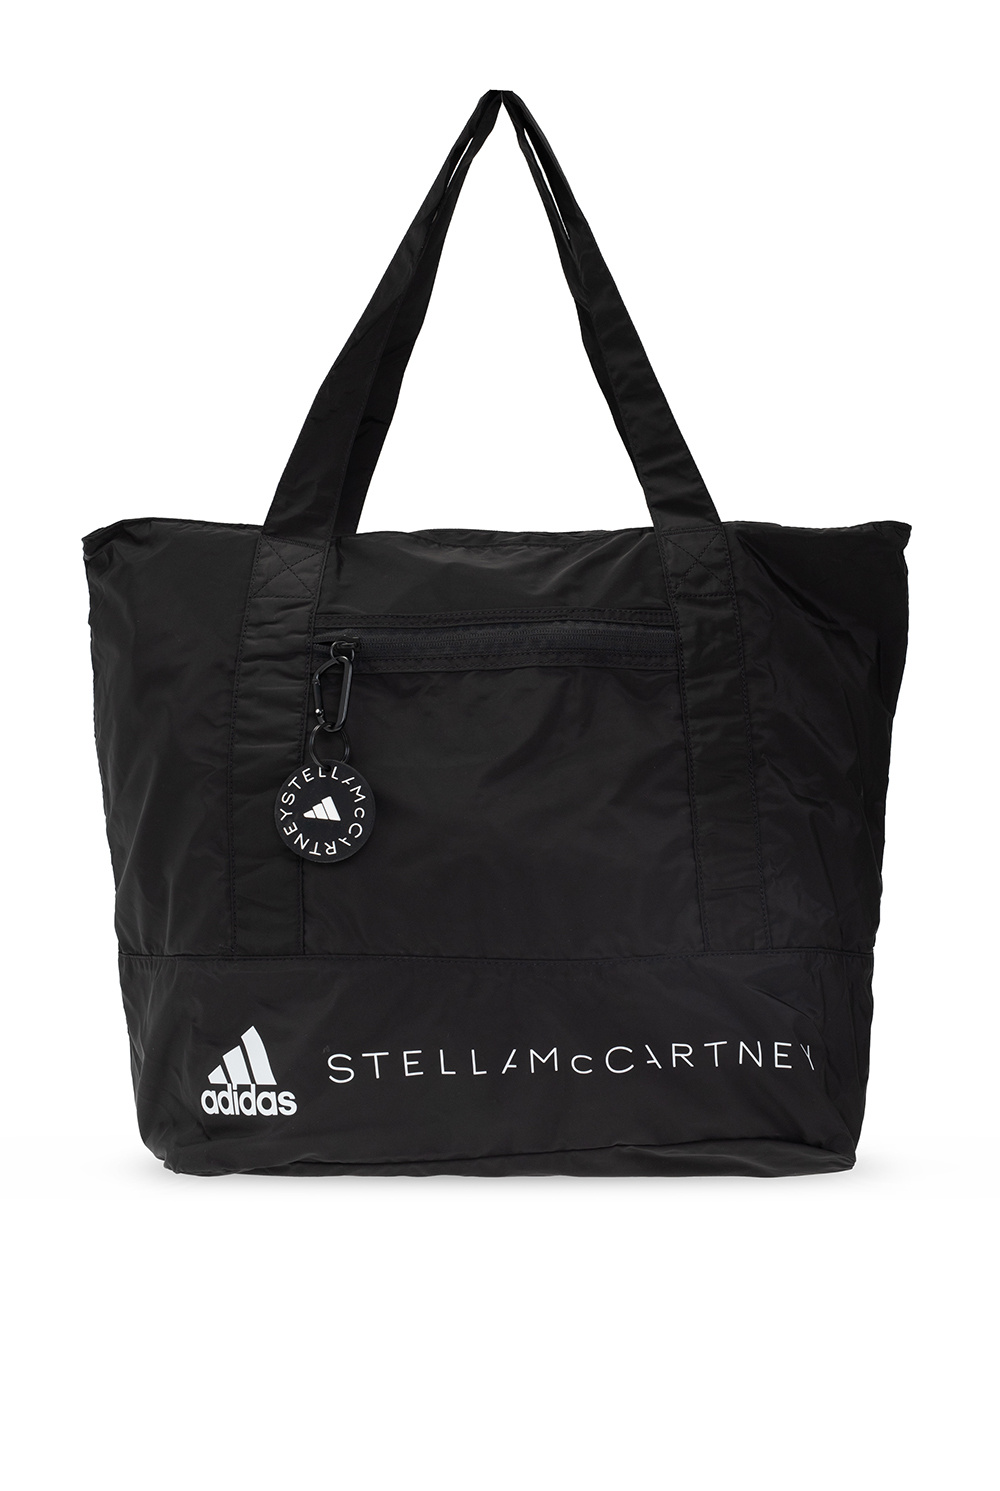 IetpShops GB - Shoulder bag logo ADIDAS by Stella McCartney Adidas Superstar J Hot Sale